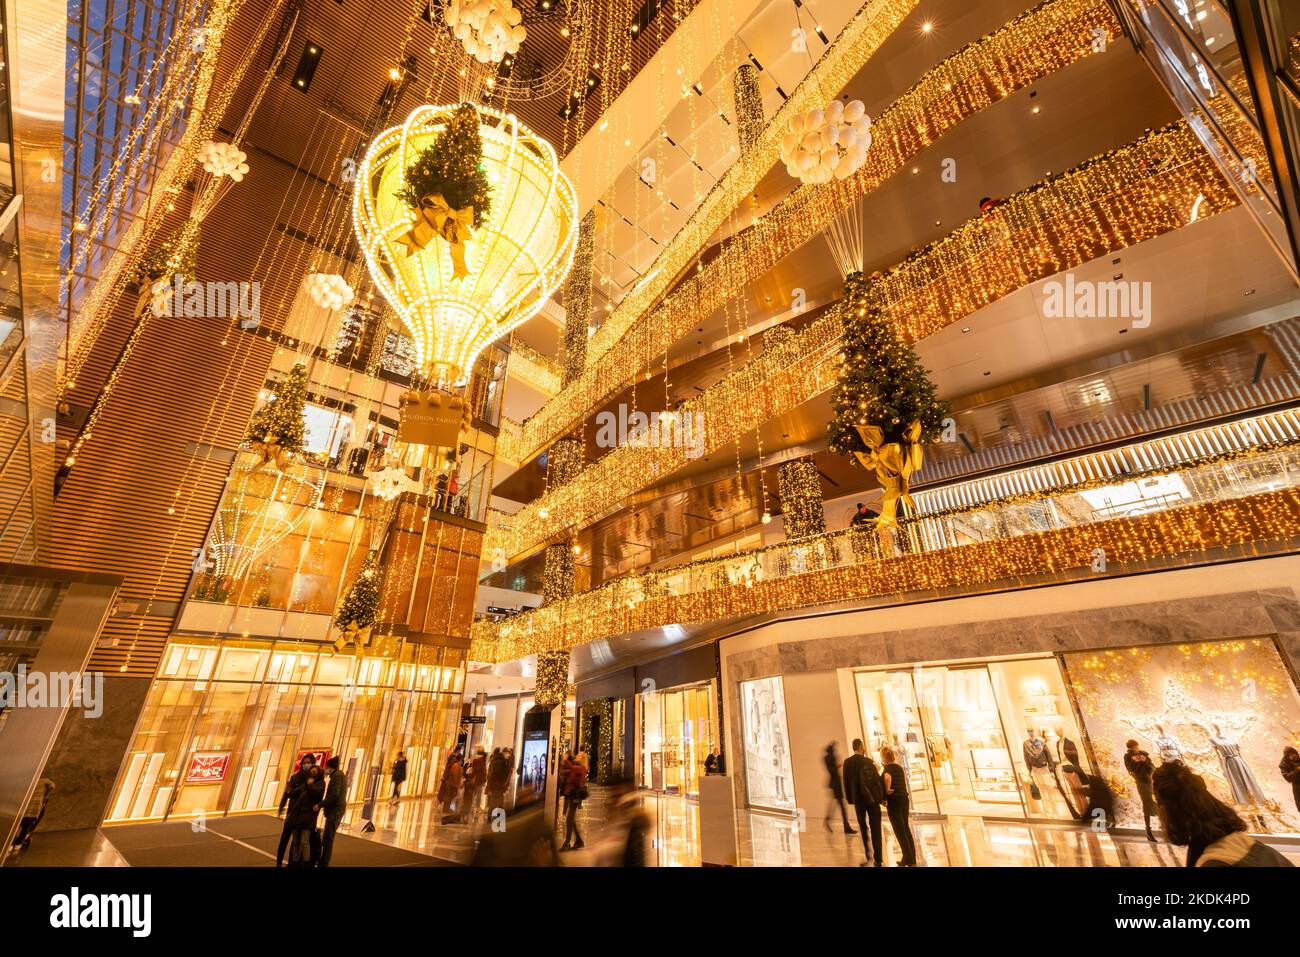 Centro commerciale Hudson Yards con decorazioni natalizie illuminate in serata. Midtown Manhattan, New York City Foto Stock